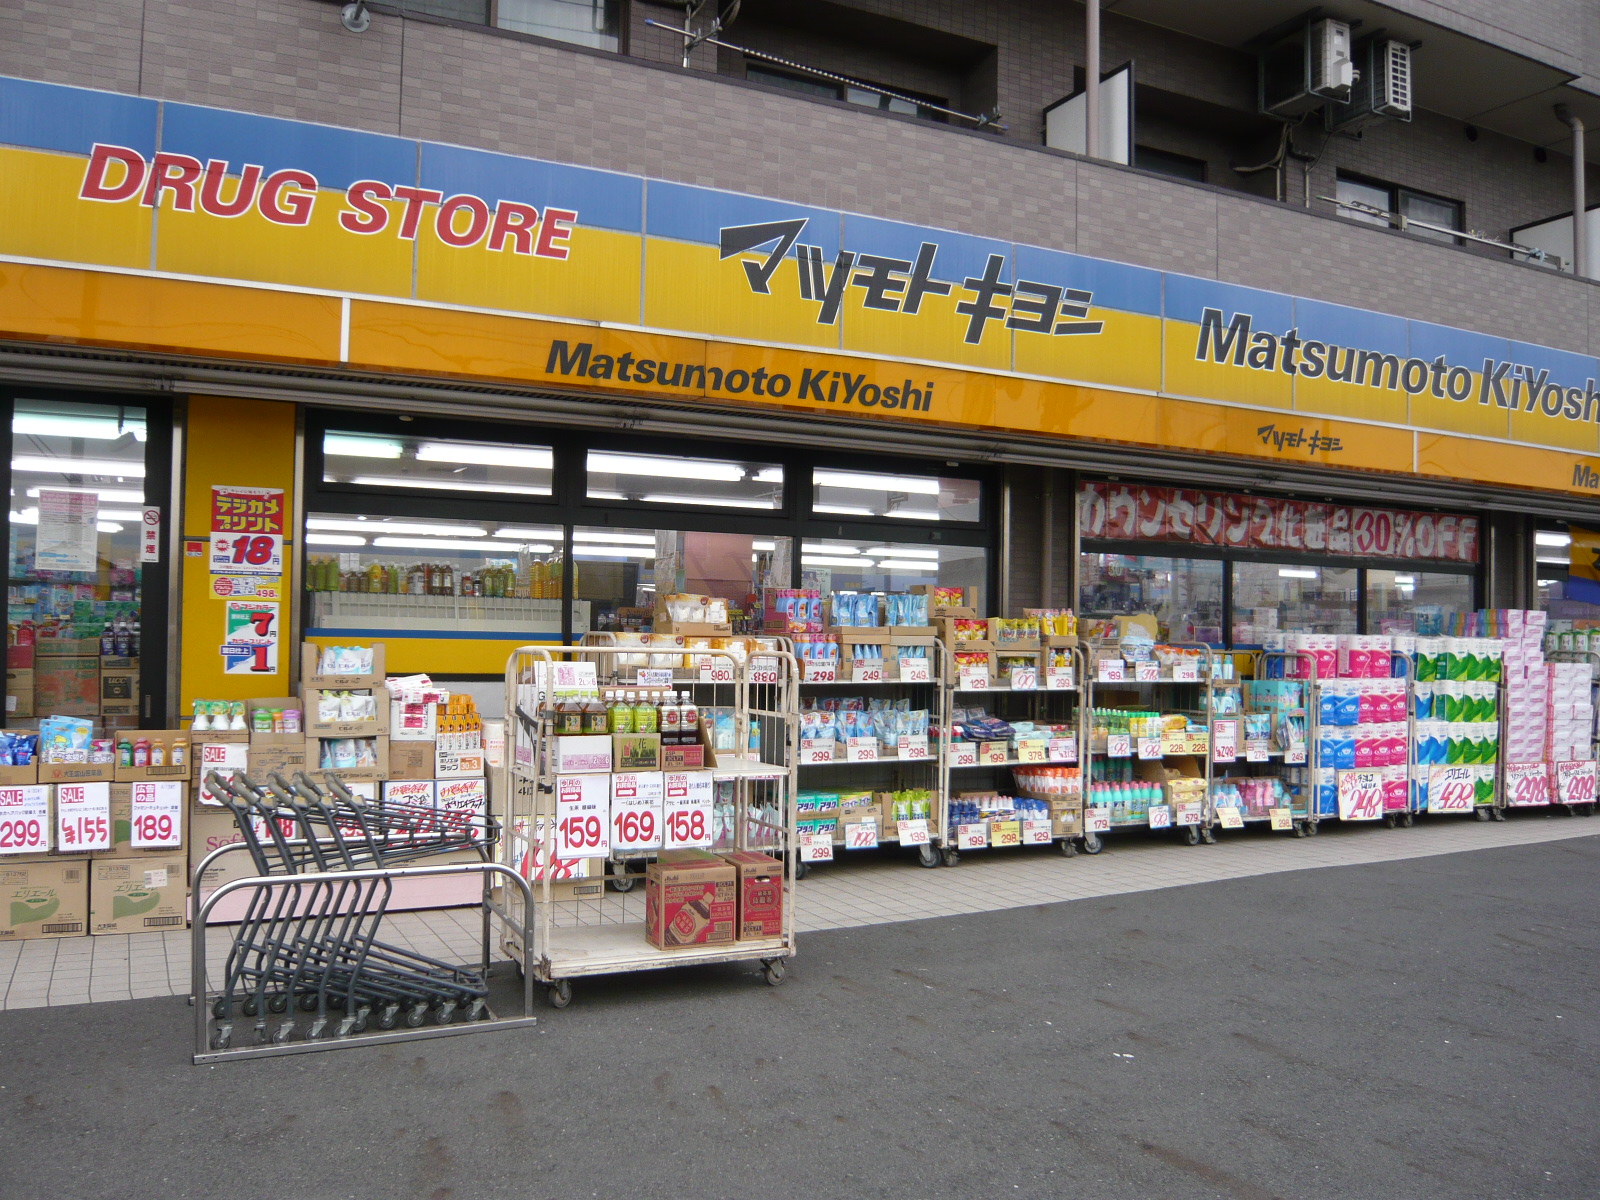 Dorakkusutoa. Matsumotokiyoshi Ever Les shop 1225m until (drugstore)